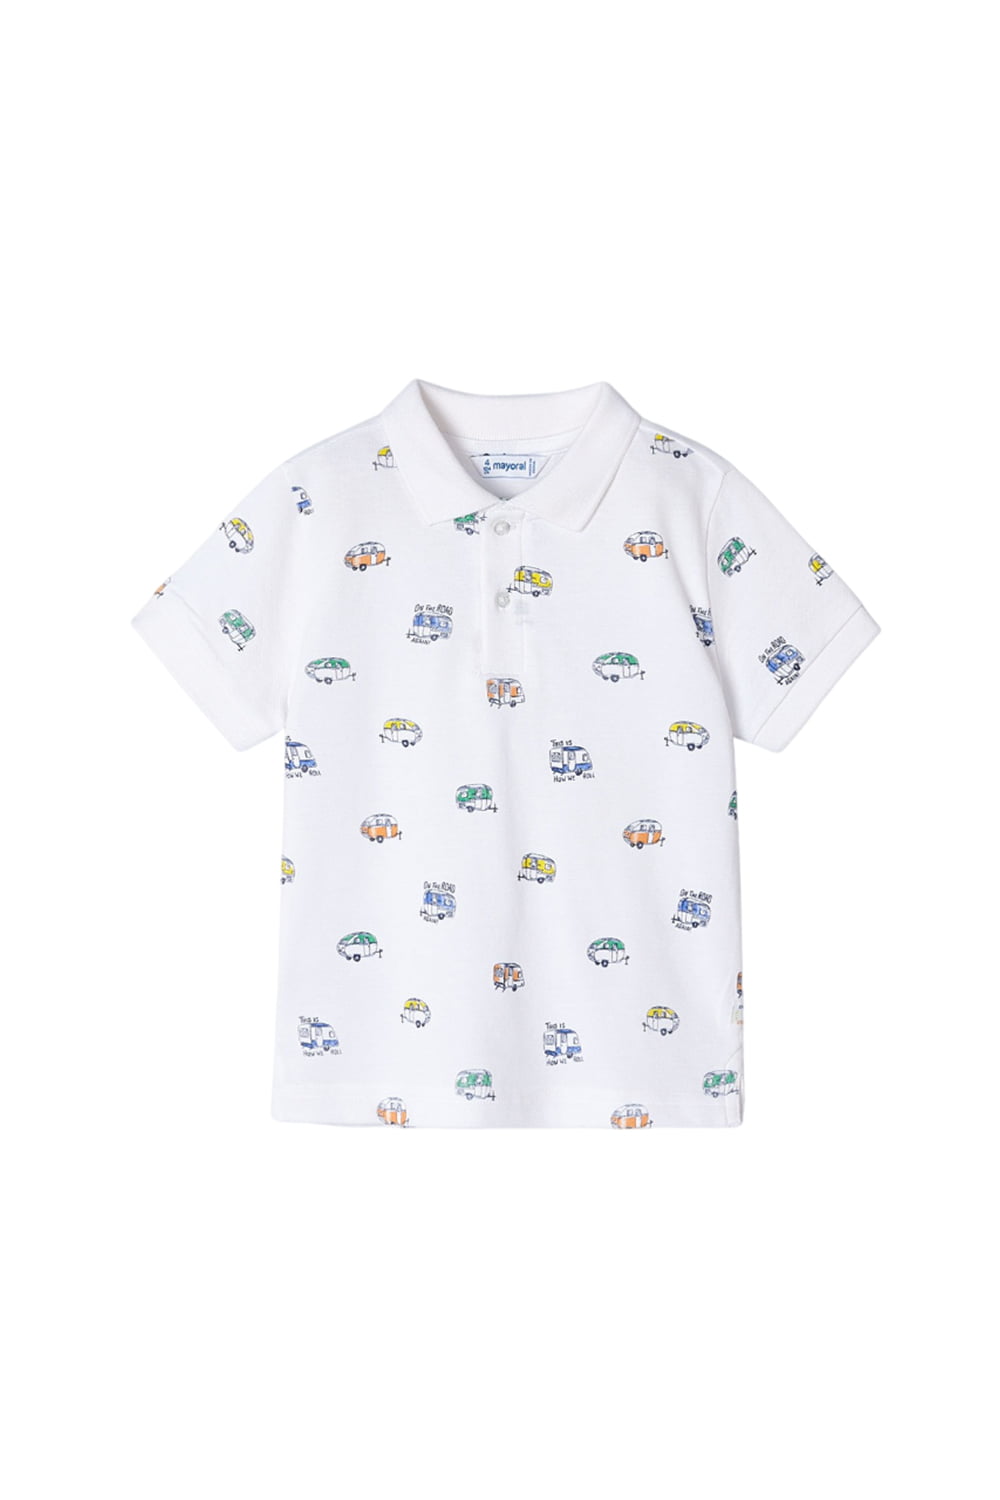 Παιδική Μπλούζα Για Αγόρι MAYORAL 24-03107-039 Άσπρο